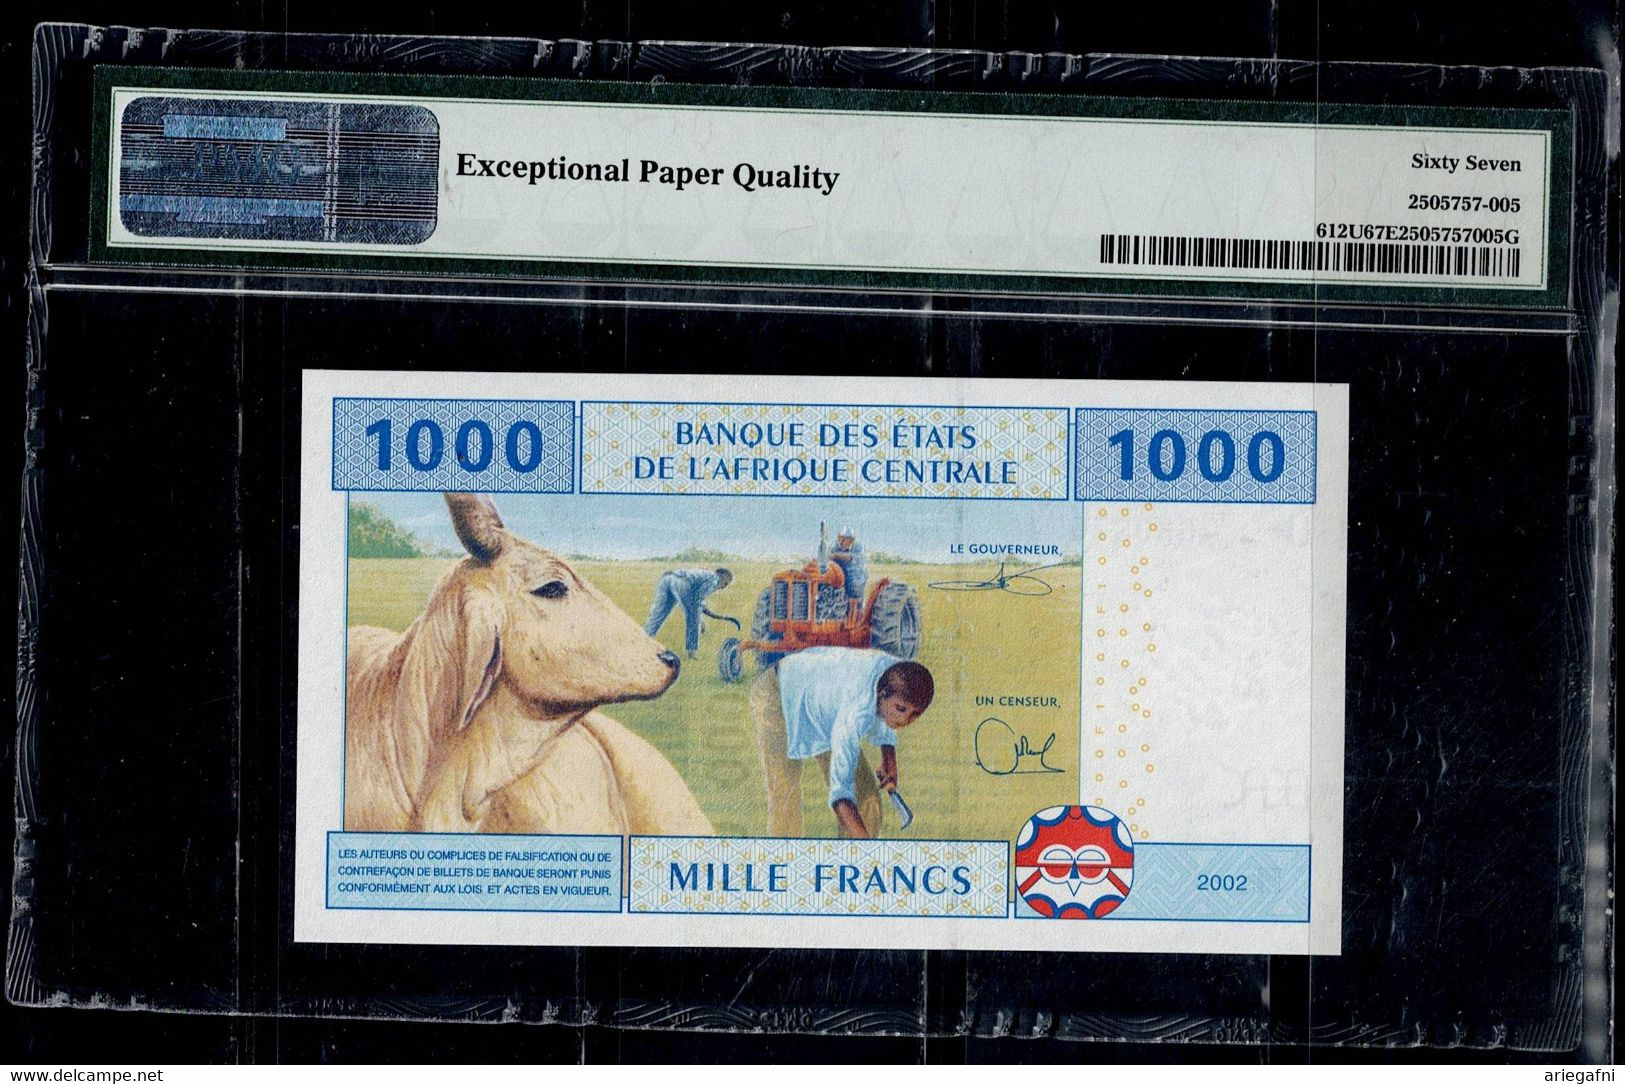 CAMEROON 2002 BANKNOT 1000 FRANCS PMG 67 UNC !! - Kameroen